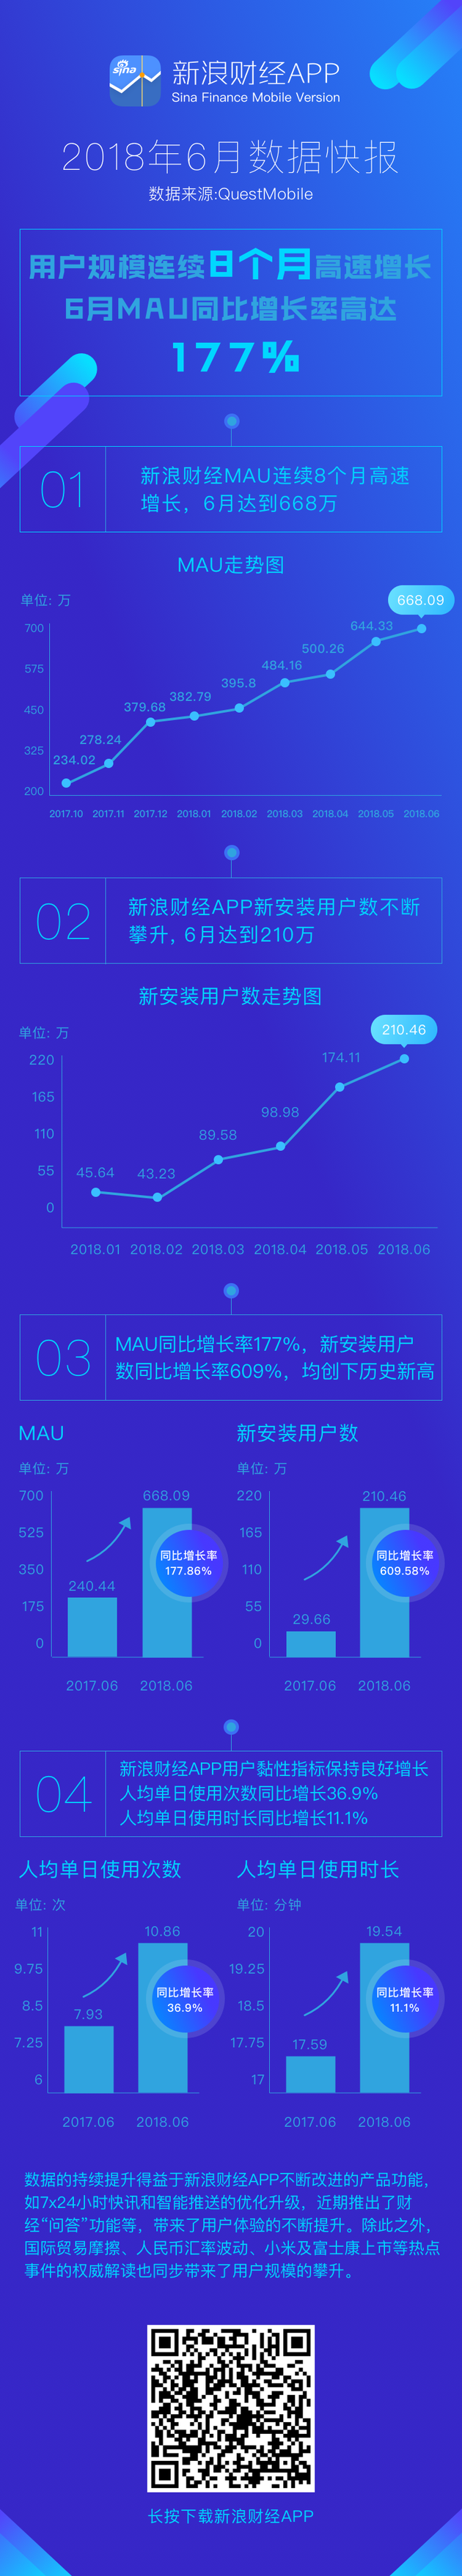 新浪财经APP用户规模连续8个月增长 6月MAU达668万